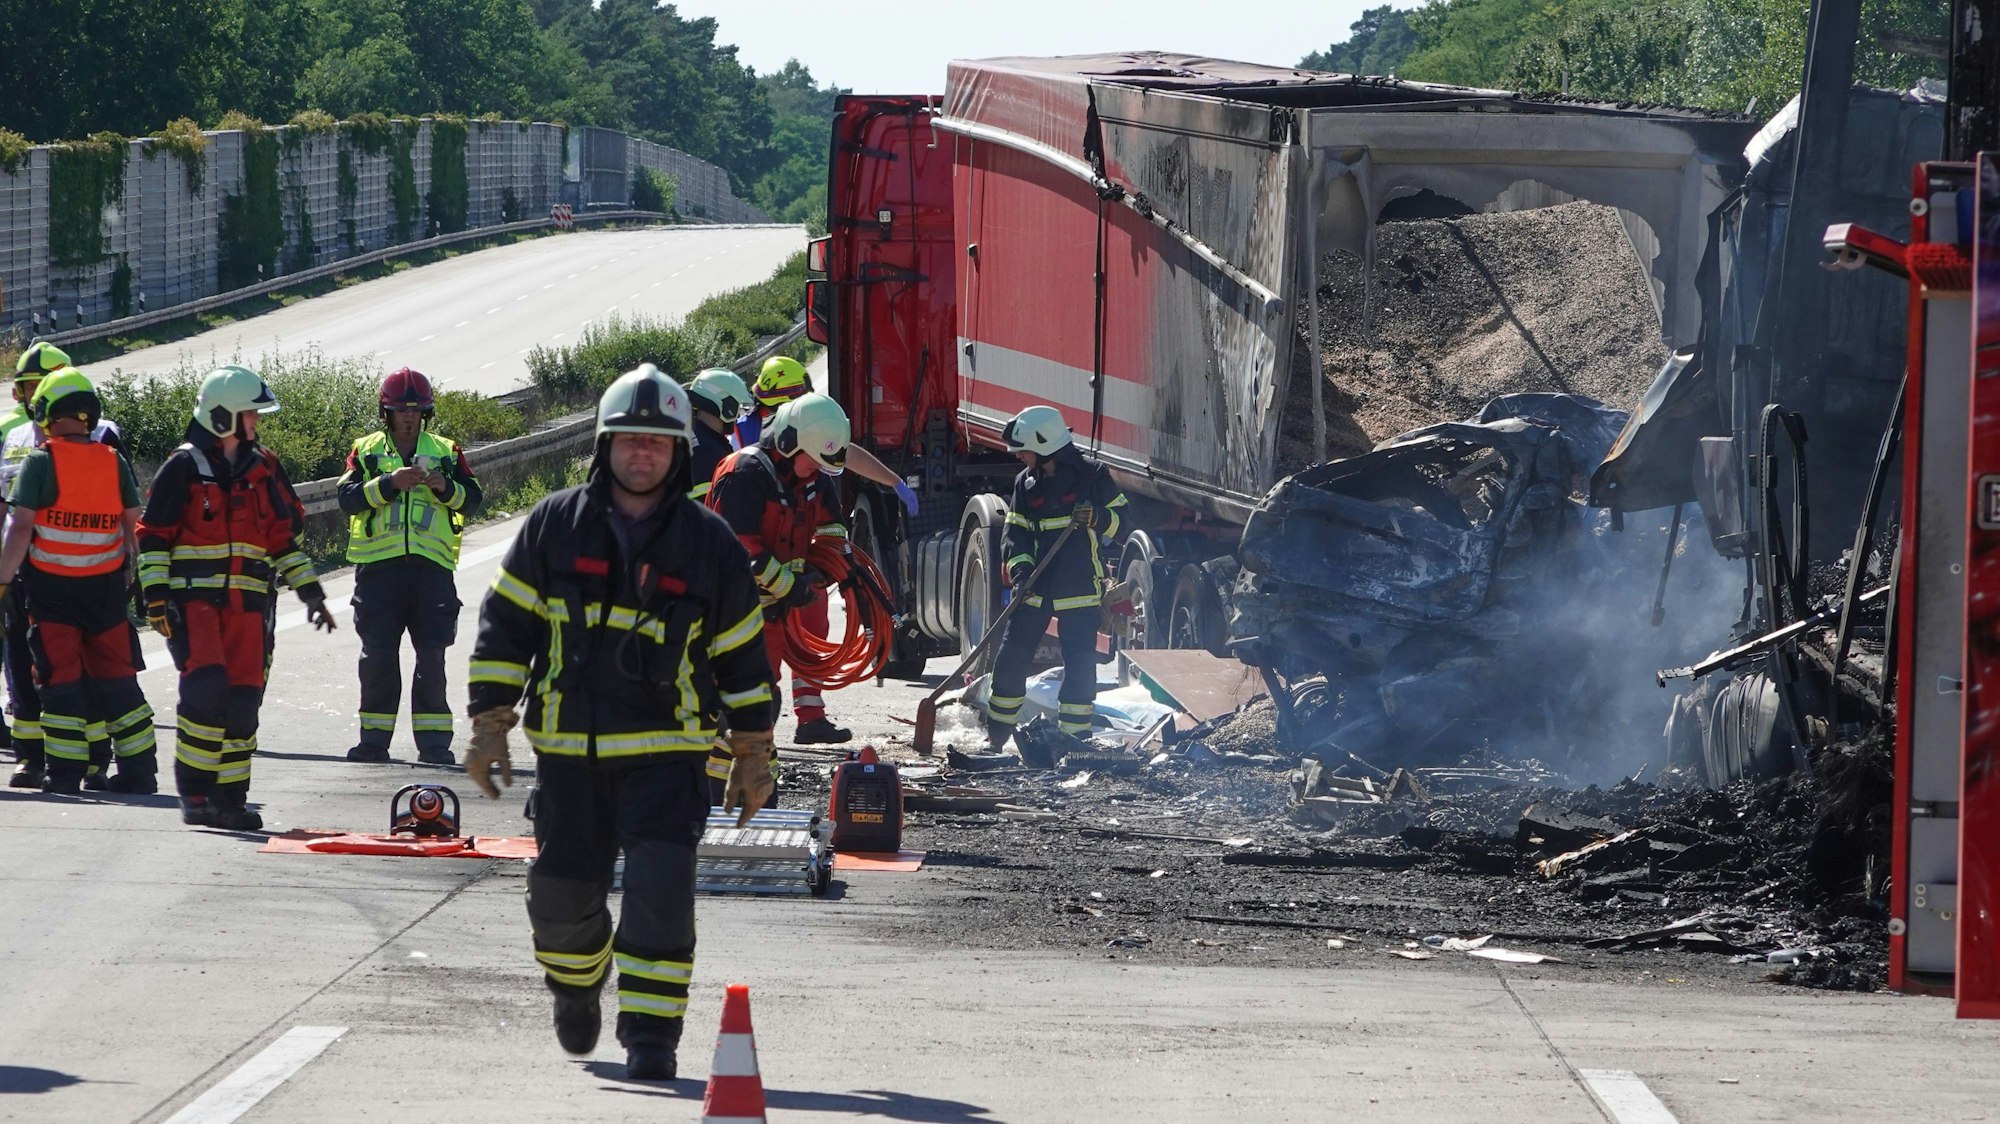 Dieses Symbolfoto stammt von einem Unfall auf der A2 in Sachsen-Anhalt, bei dem ebenfalls ein Lkw auf ein Stauende aufgefahren war. Es wurde am 12. Juli 2022 aufgenommen.